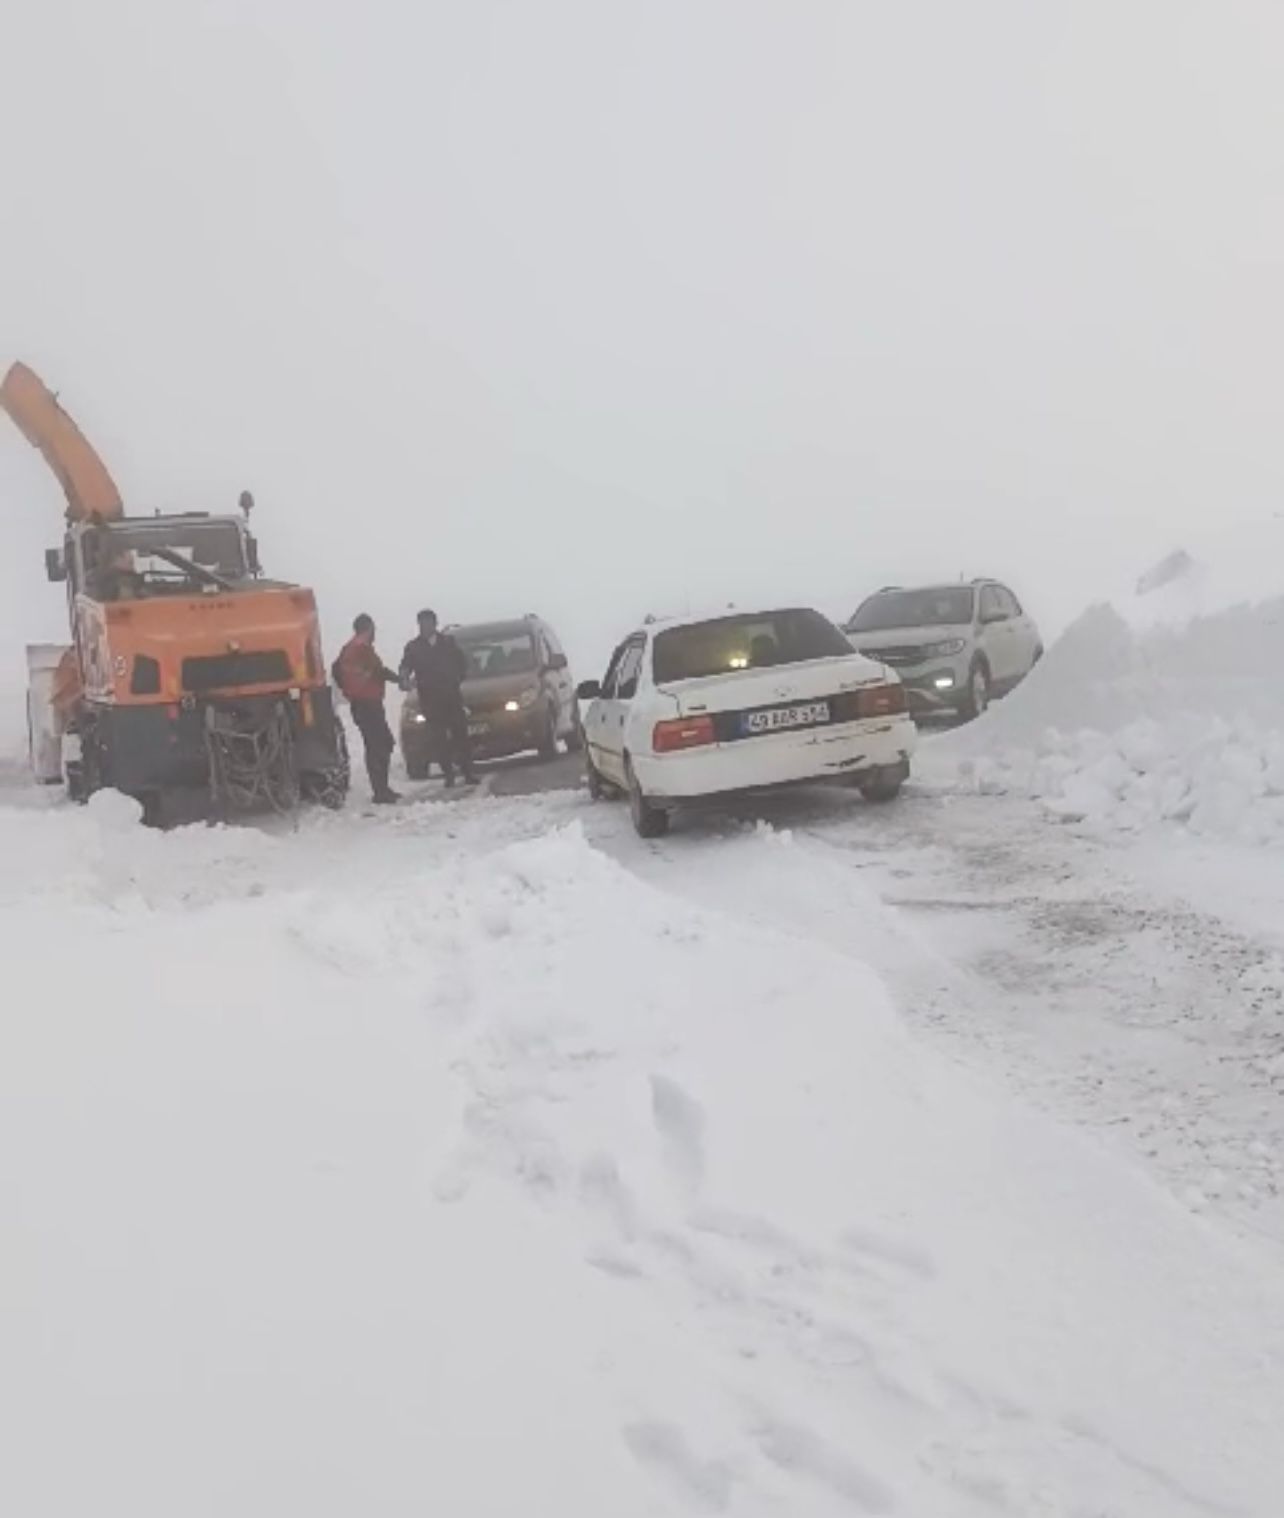 Muş ilinde meydana gelen kar ve tipi olayı sonucunda, karayolunda mahsur kalan 35 kişi, hızlı bir şekilde müdahale edilerek 3 saat içerisinde kurtarıldı.